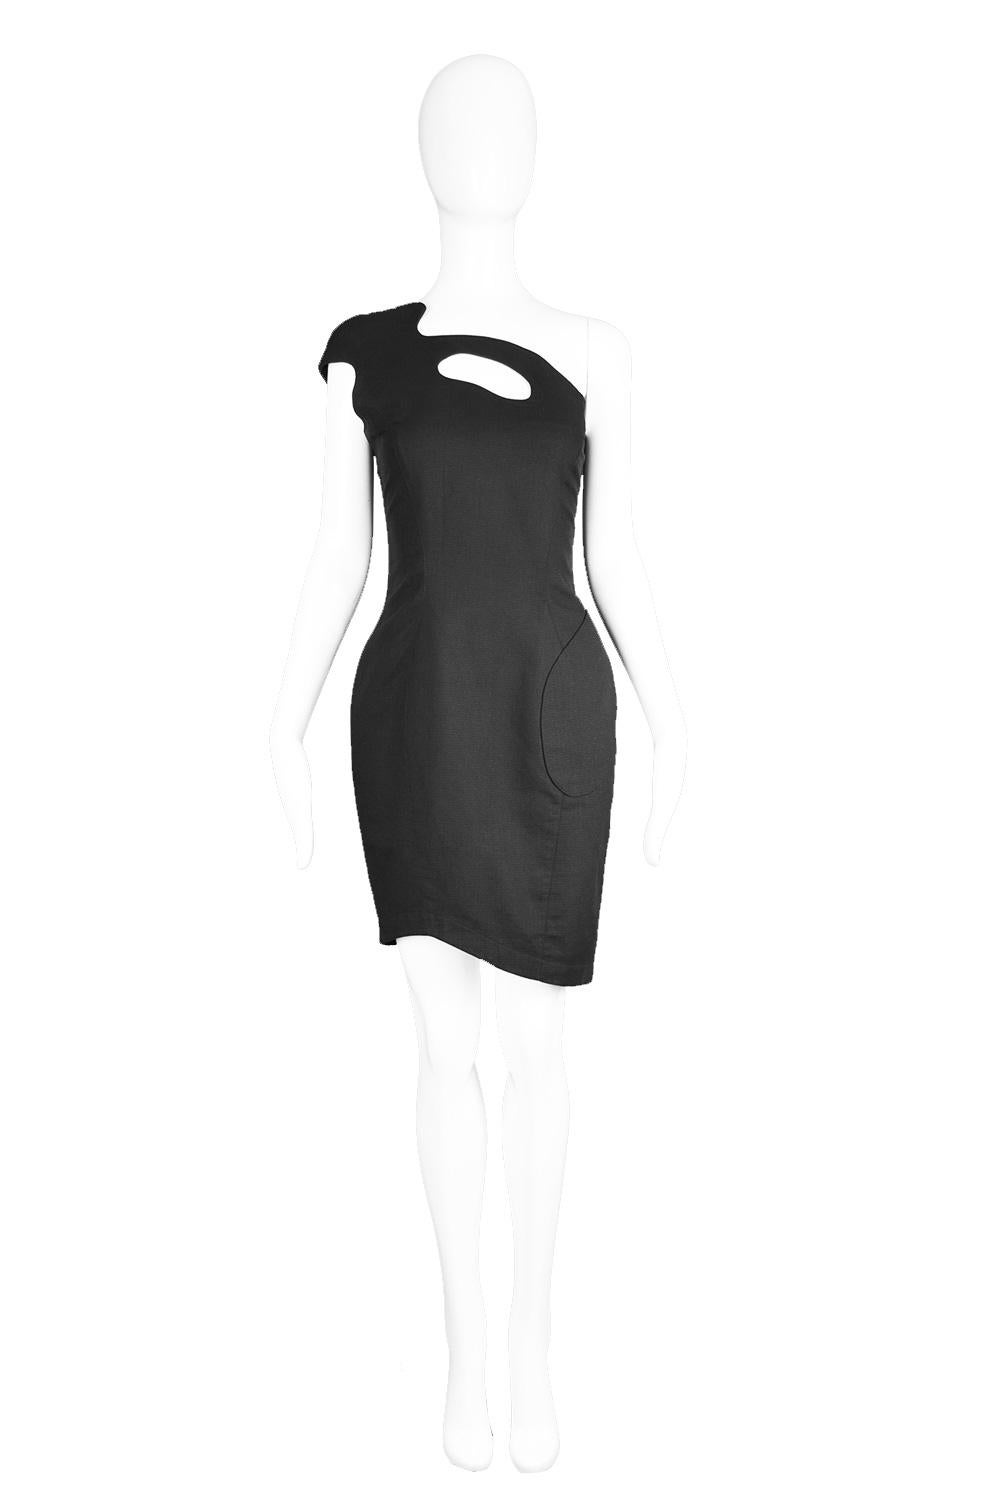 Thierry Mugler Sculptural One Shoulder Vintage Black Cotton Party Dress, 1980s

Estimated Size: UK 10/ US 6/ EU 38. Please check measurements & description by clicking 'Continue Reading' below.
Bust - 34” / 86cm
Waist - 28” / 71cm
Hips - 36” /